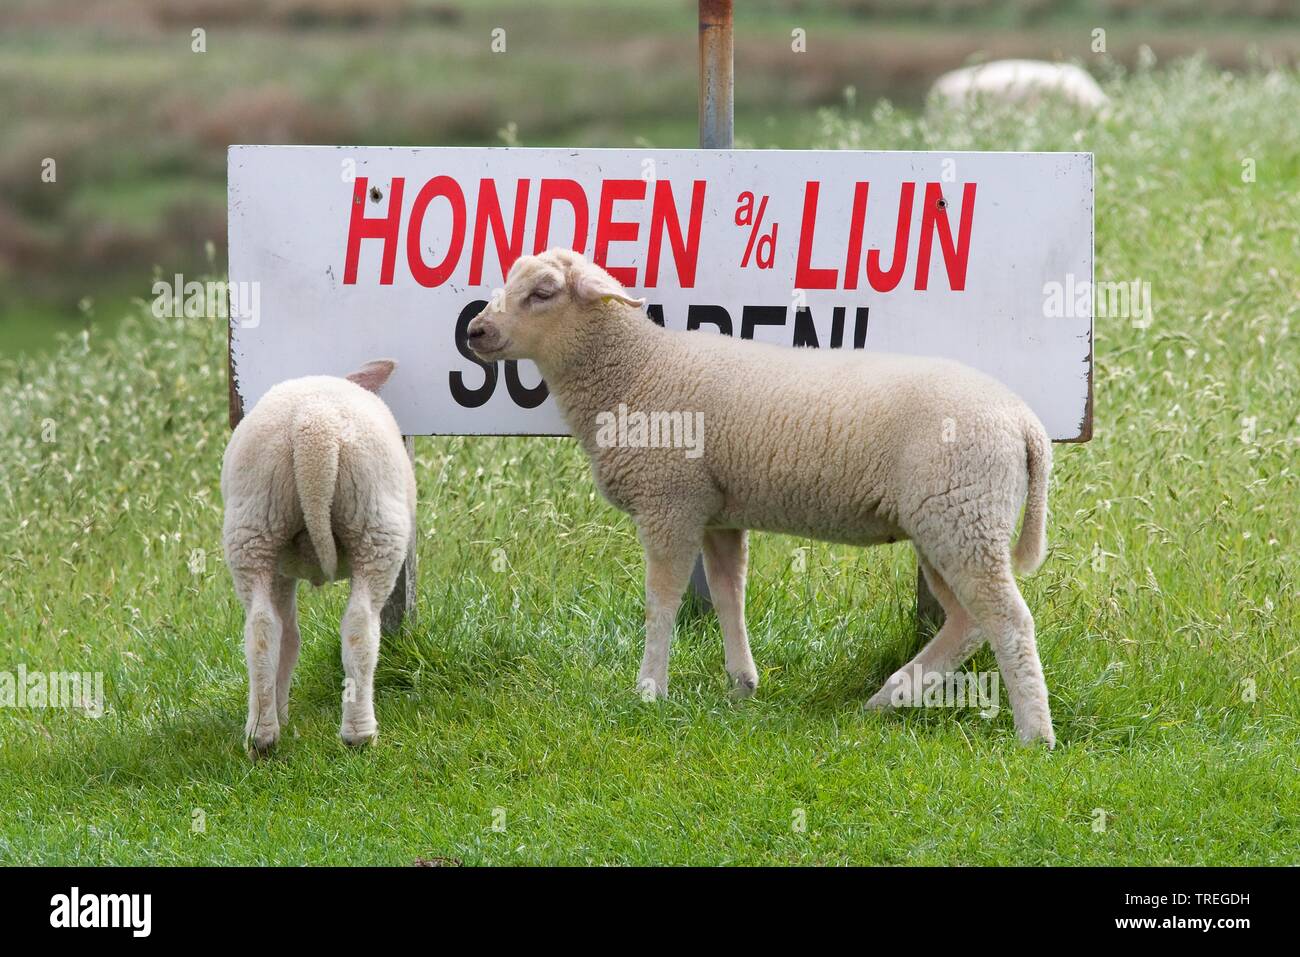 Ovejas domésticas (Ovis ammon f. aries), dos ovejas en un signo Schild 'Honden Lijn a/d - por favor tenga perros con una correa", Países Bajos, Schiermonnikoog Foto de stock